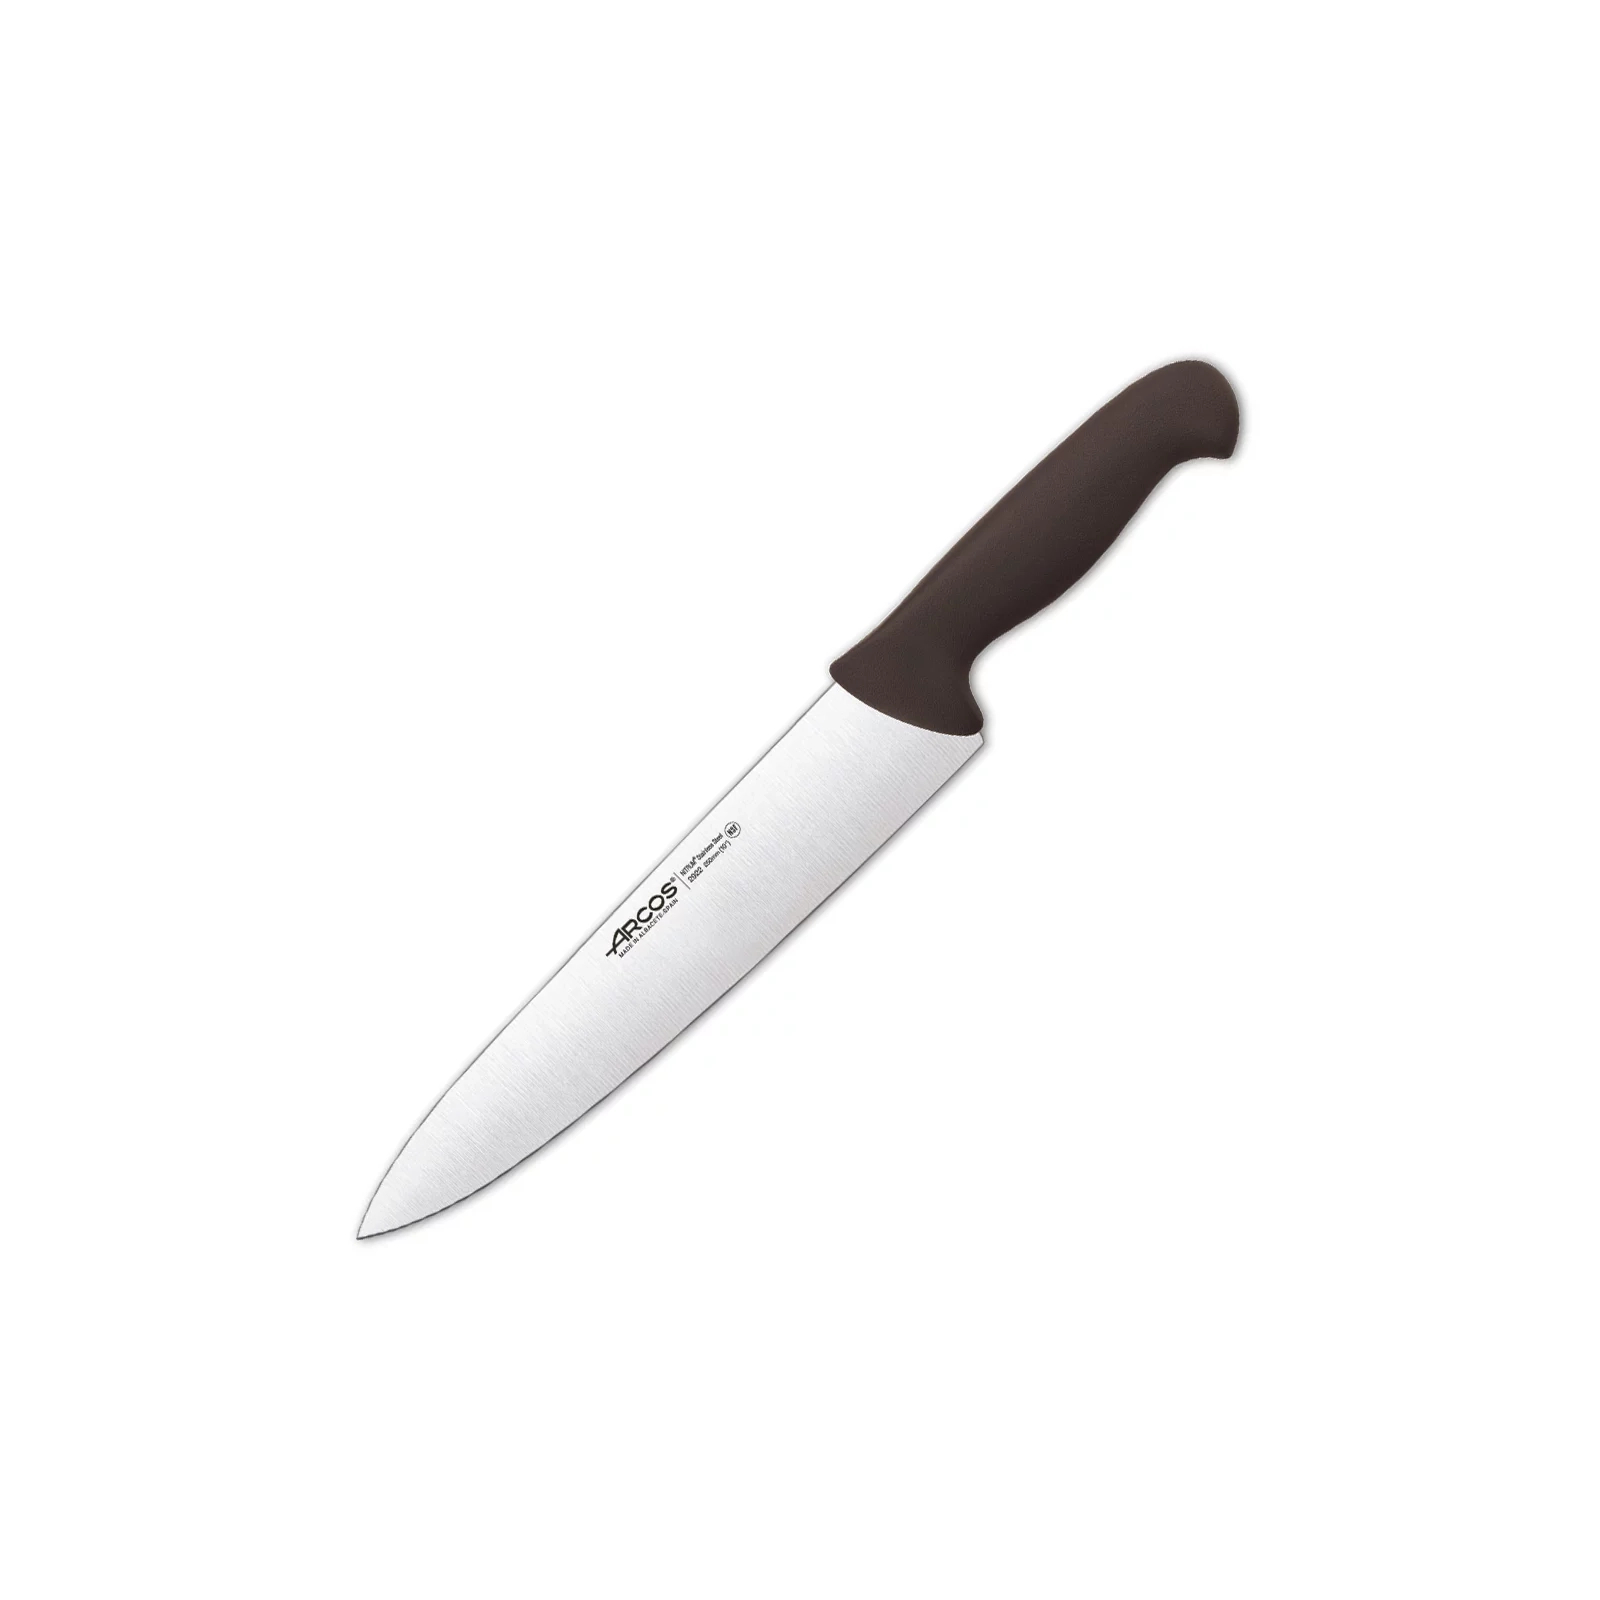 Кухонный нож Arcos серія "2900" поварський 250 мм Зелений (292221)